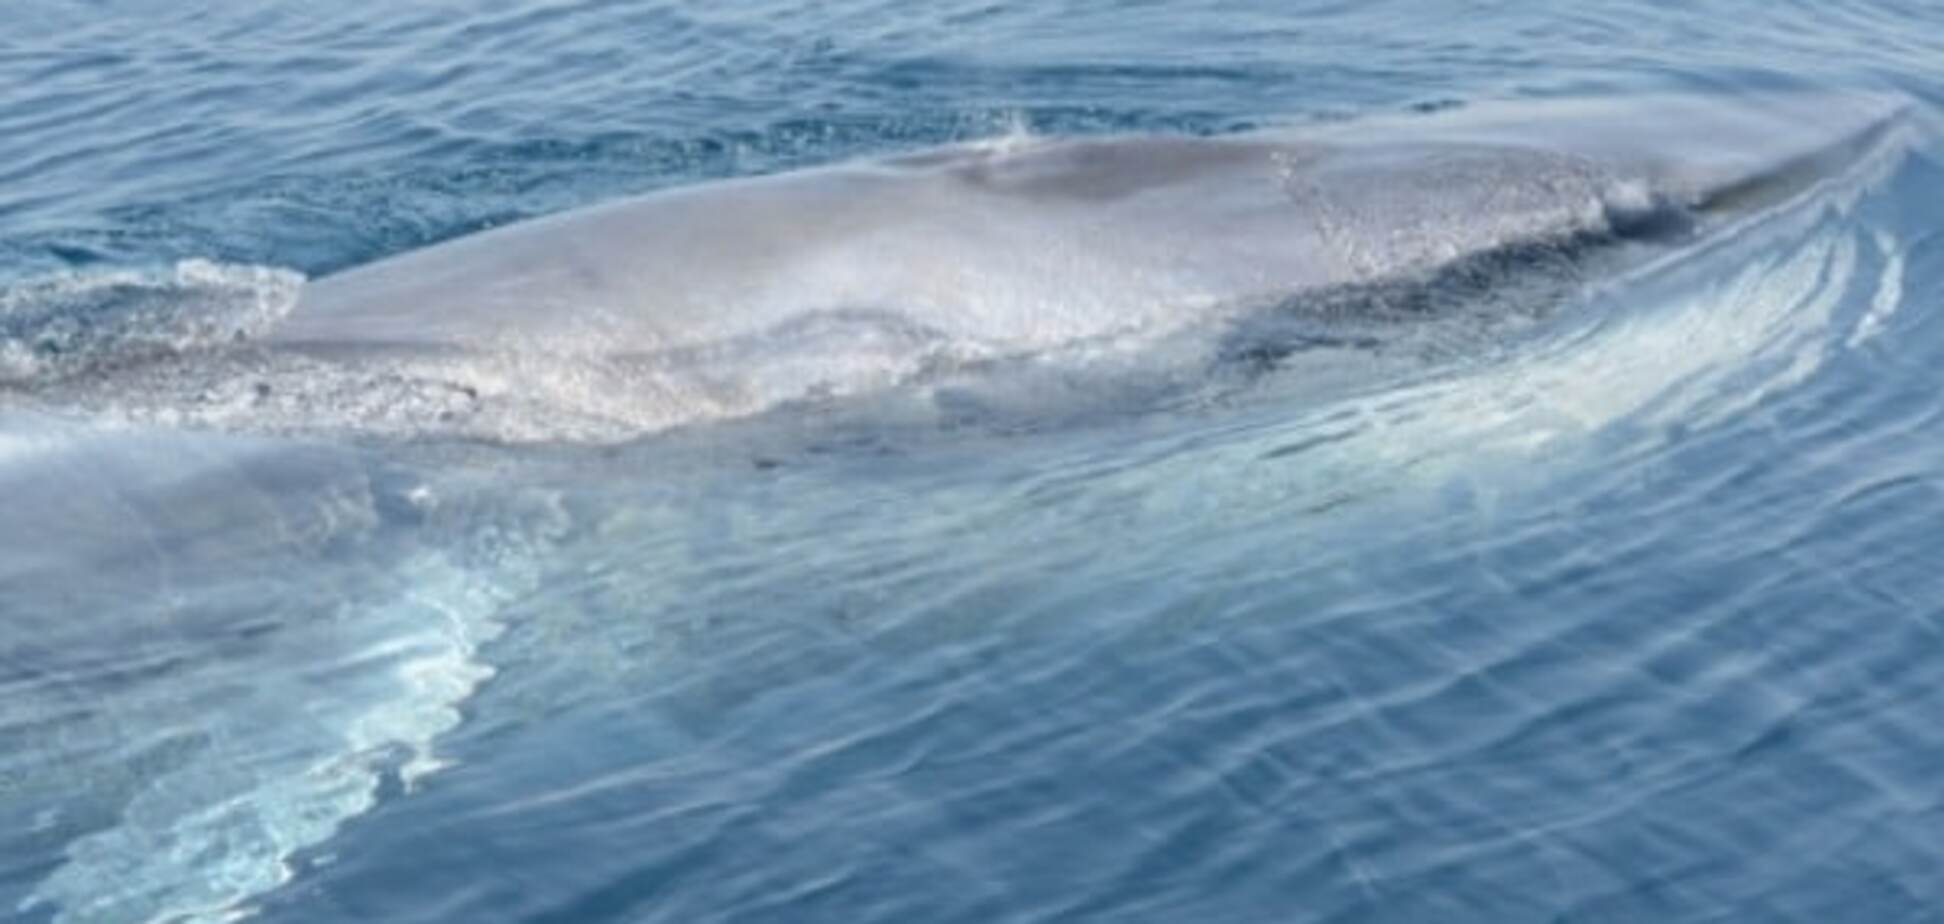 Чудо природы: ученые показали жизнь редчайшего мадагаскарского кита. Фотофакт